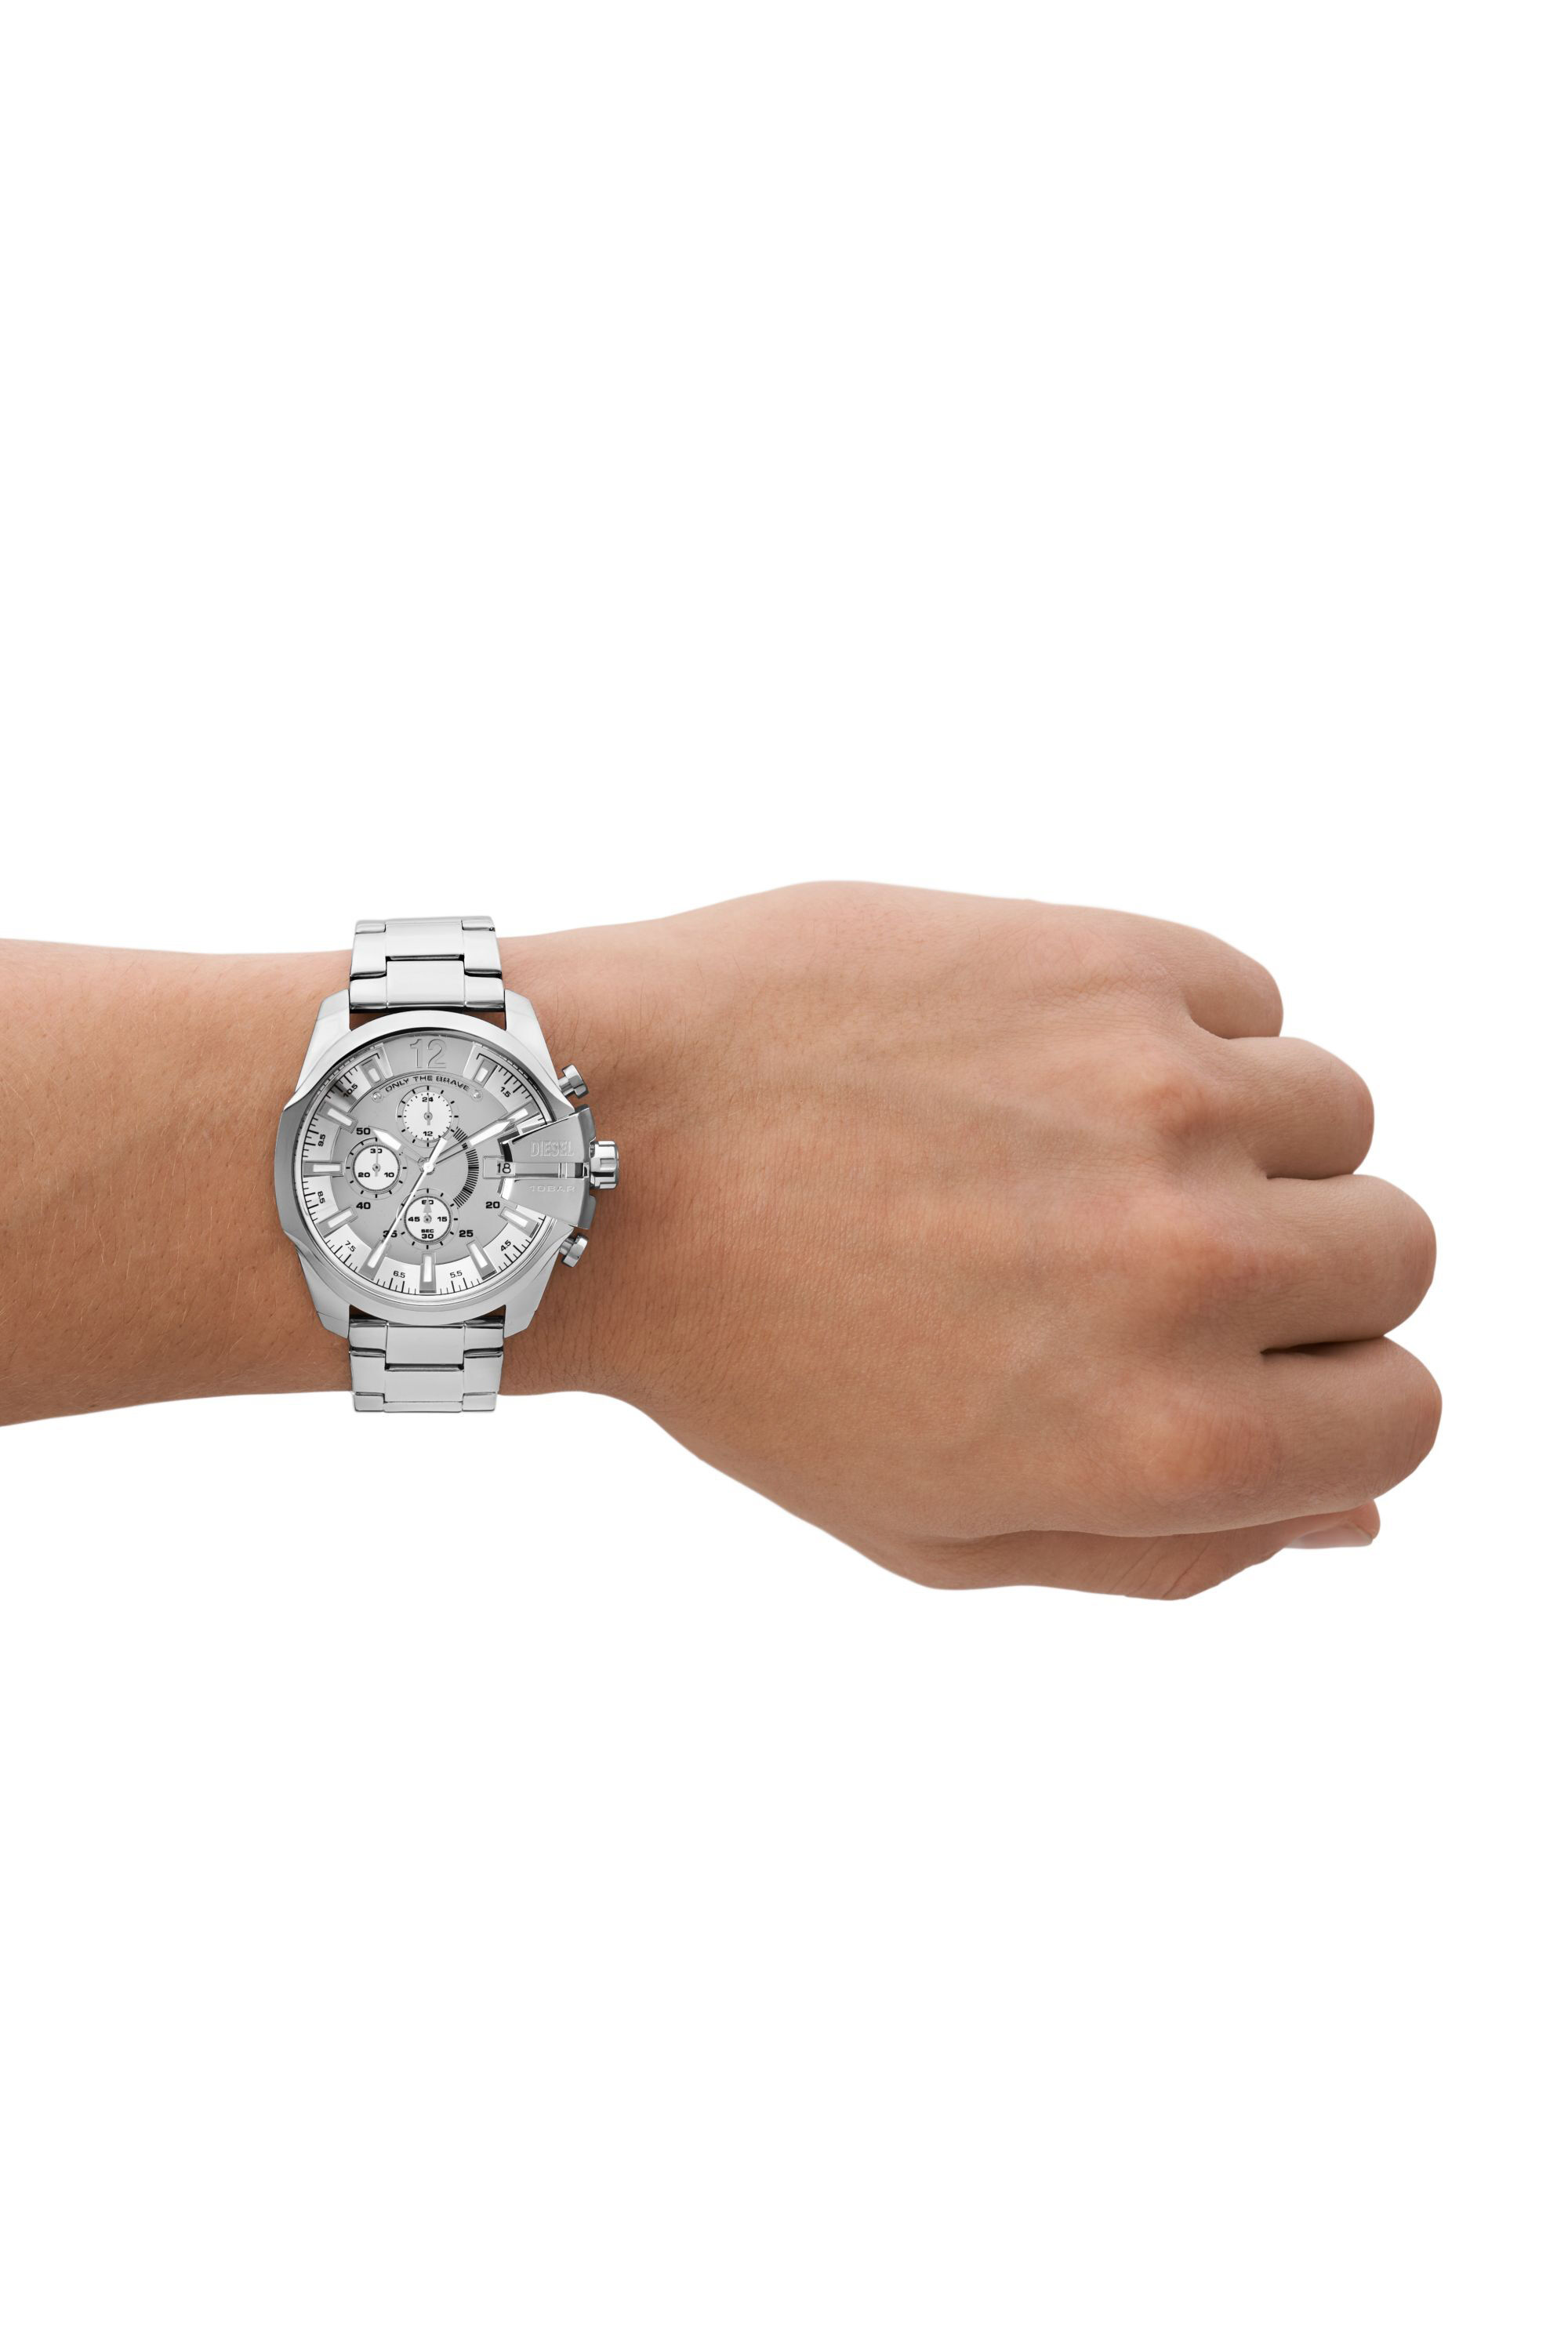 DZ4652 Baby Diesel watch stainless steel Men\'s Chief chronograph |